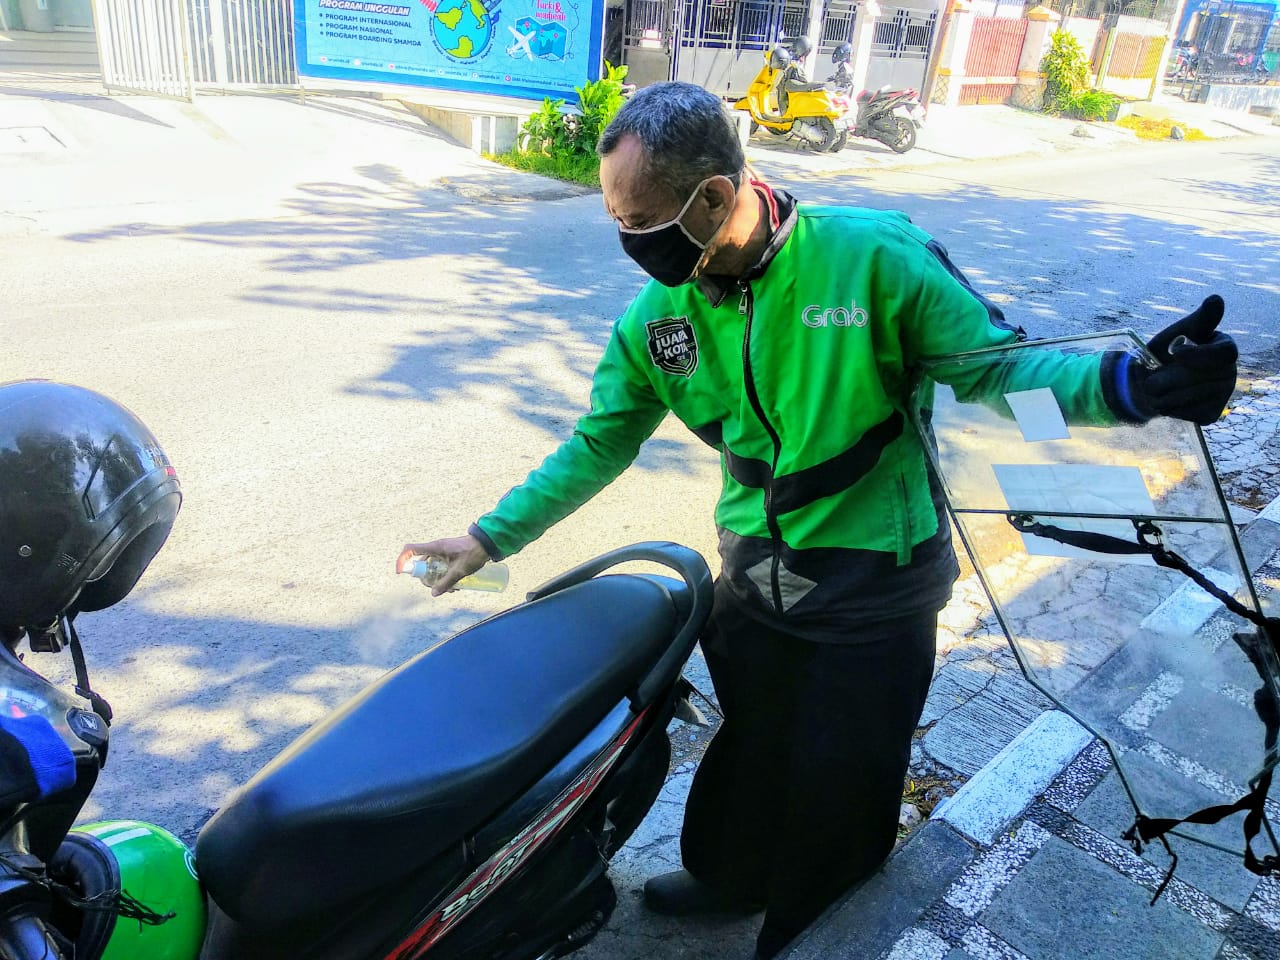 Nahrowi saat menyemprot disinfektan ke sepeda motornya sebelum mengantar penumpang (Foto: M.Rizqi/Ngopibareng.id)